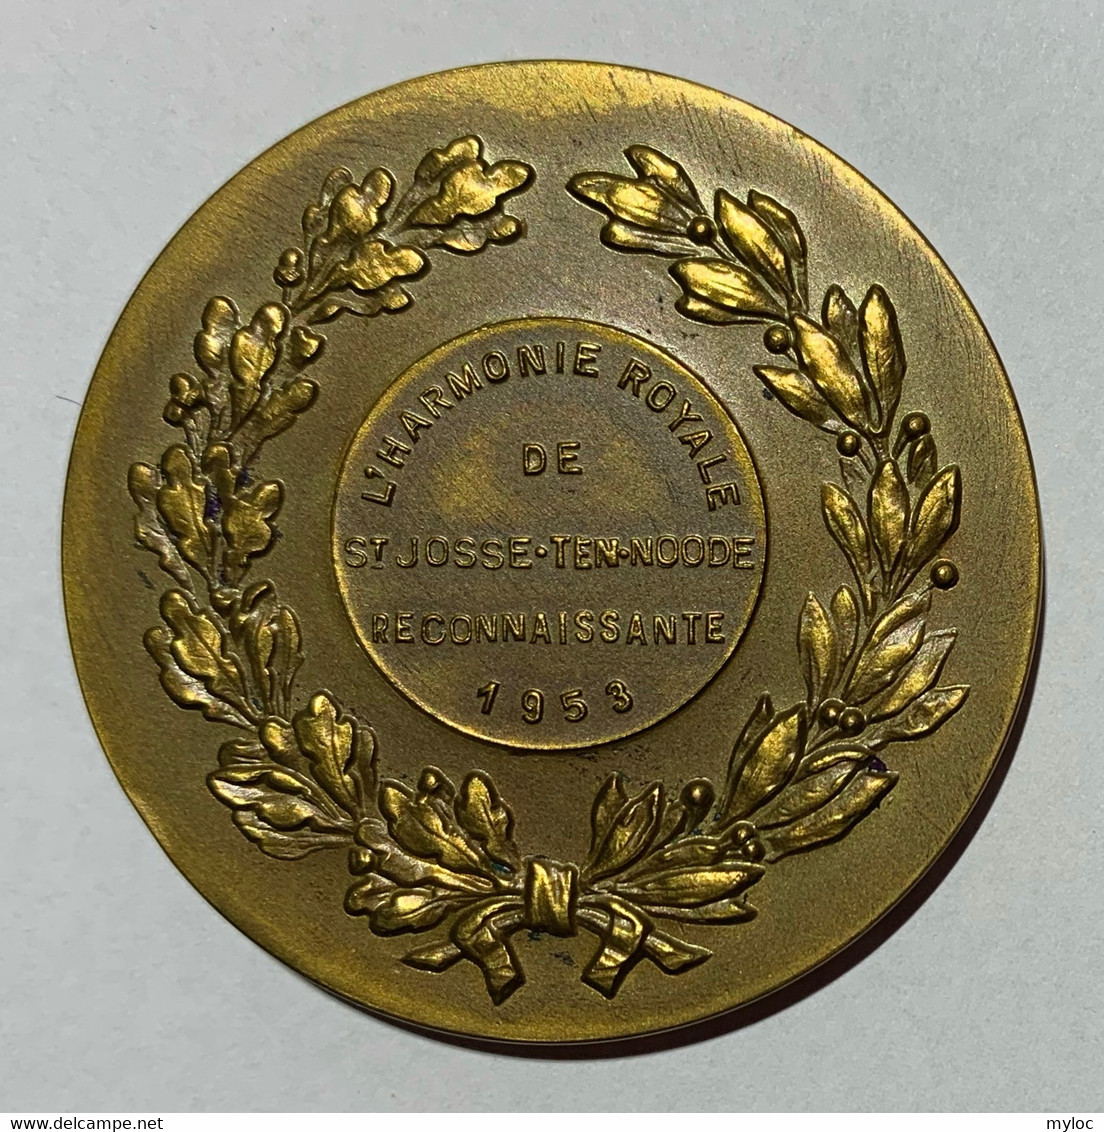 Médaille Bronze. Femme Avec Lyre. L'Harmonie Royale De Saint-Josse-Ten-Noode.  Reconnaissante 1953 - Professionals / Firms